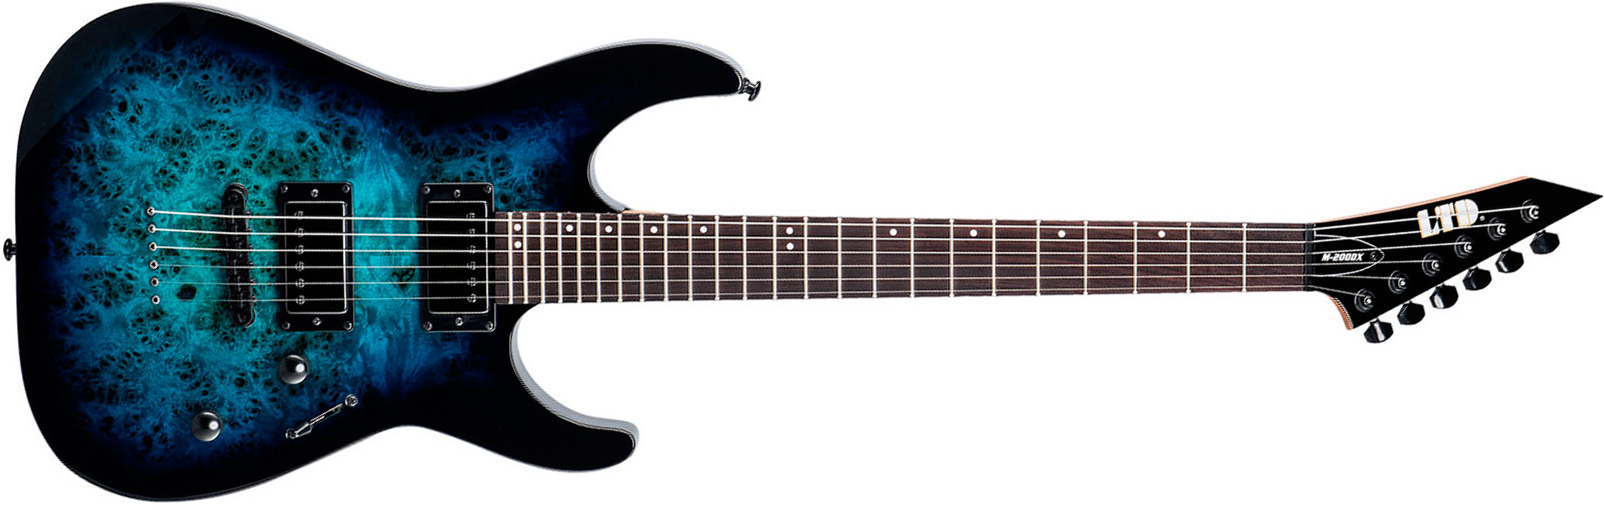 Ltd M200dx 2h Ht Rw - Blue Burst - Guitare Électrique Forme Str - Main picture